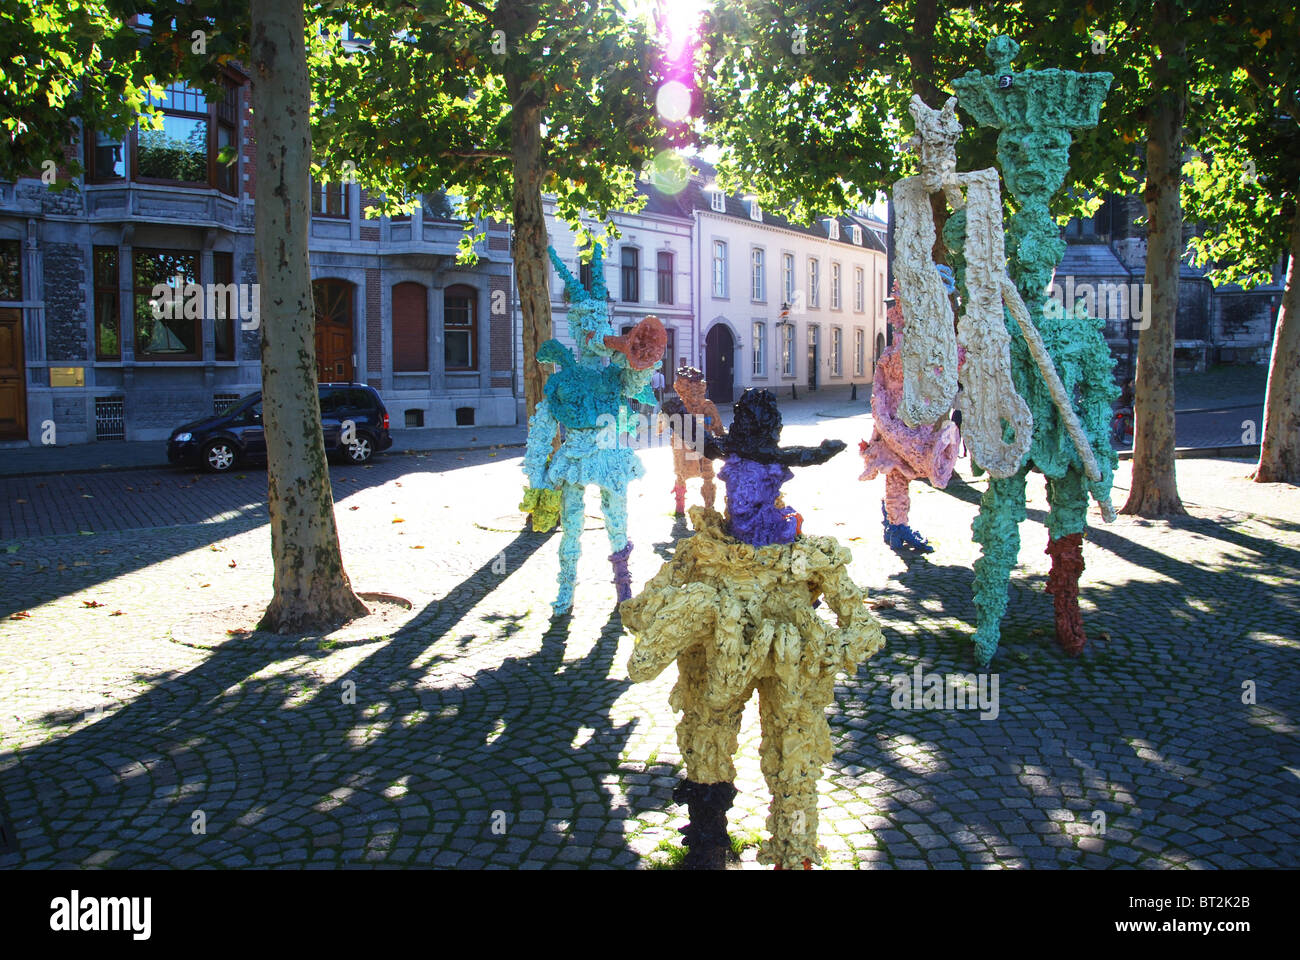 Scultura di carnevale banda musicale a piazza Vrijthof Maastricht Paesi Bassi Foto Stock